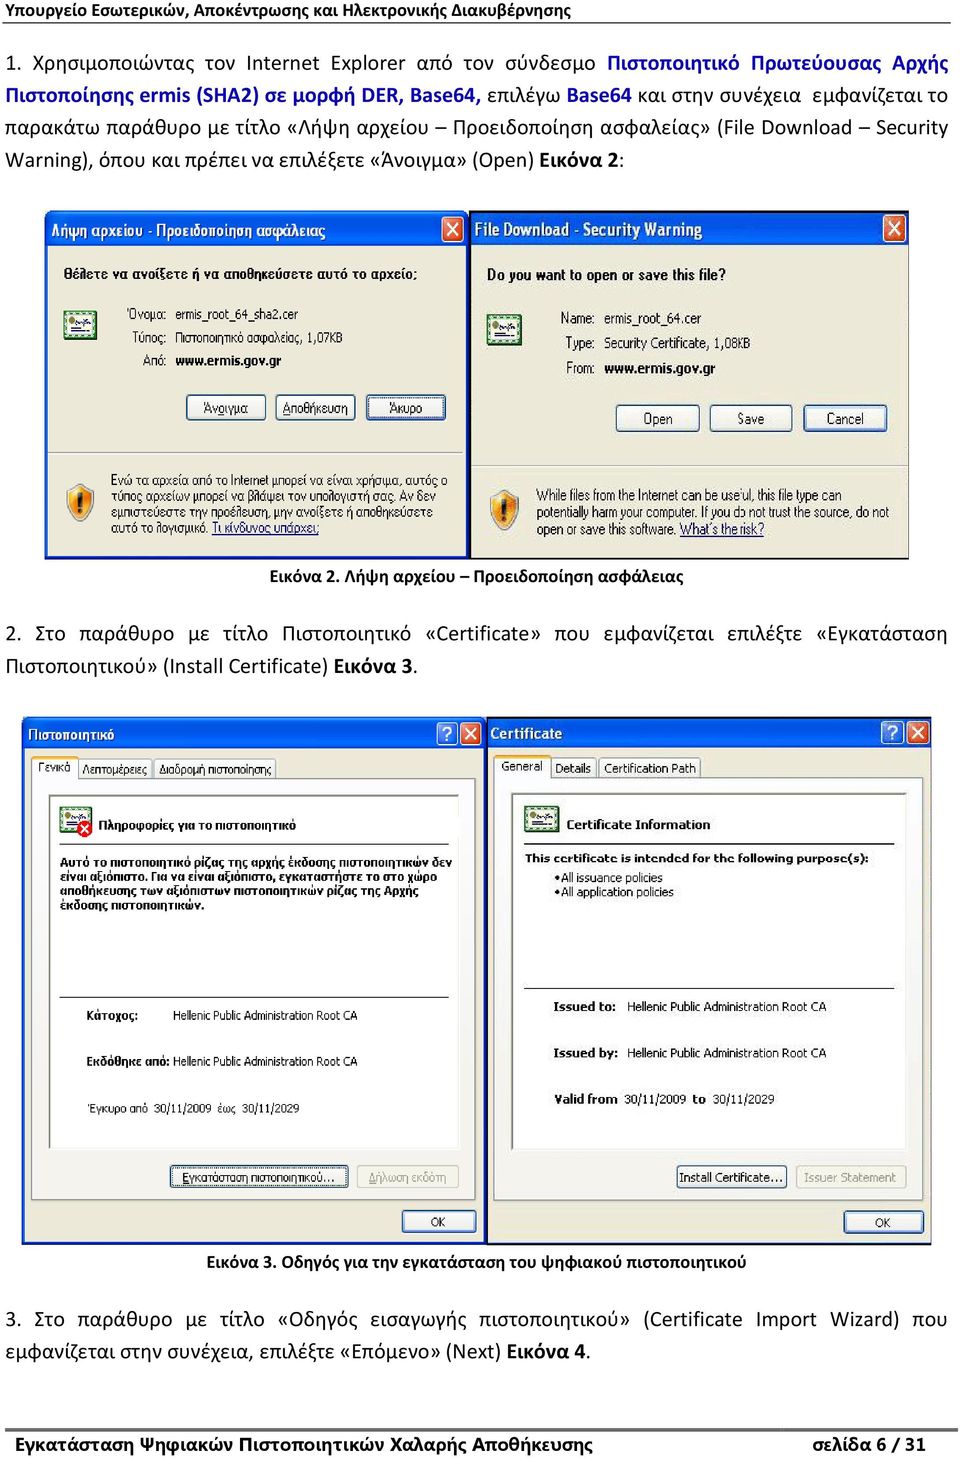 Στο παράθυρο με τίτλο Πιστοποιητικό «Certificate» που εμφανίζεται επιλέξτε «Εγκατάσταση Πιστοποιητικού» (Install Certificate) Εικόνα 3. Εικόνα 3. Οδηγός για την εγκατάσταση του ψηφιακού πιστοποιητικού 3.